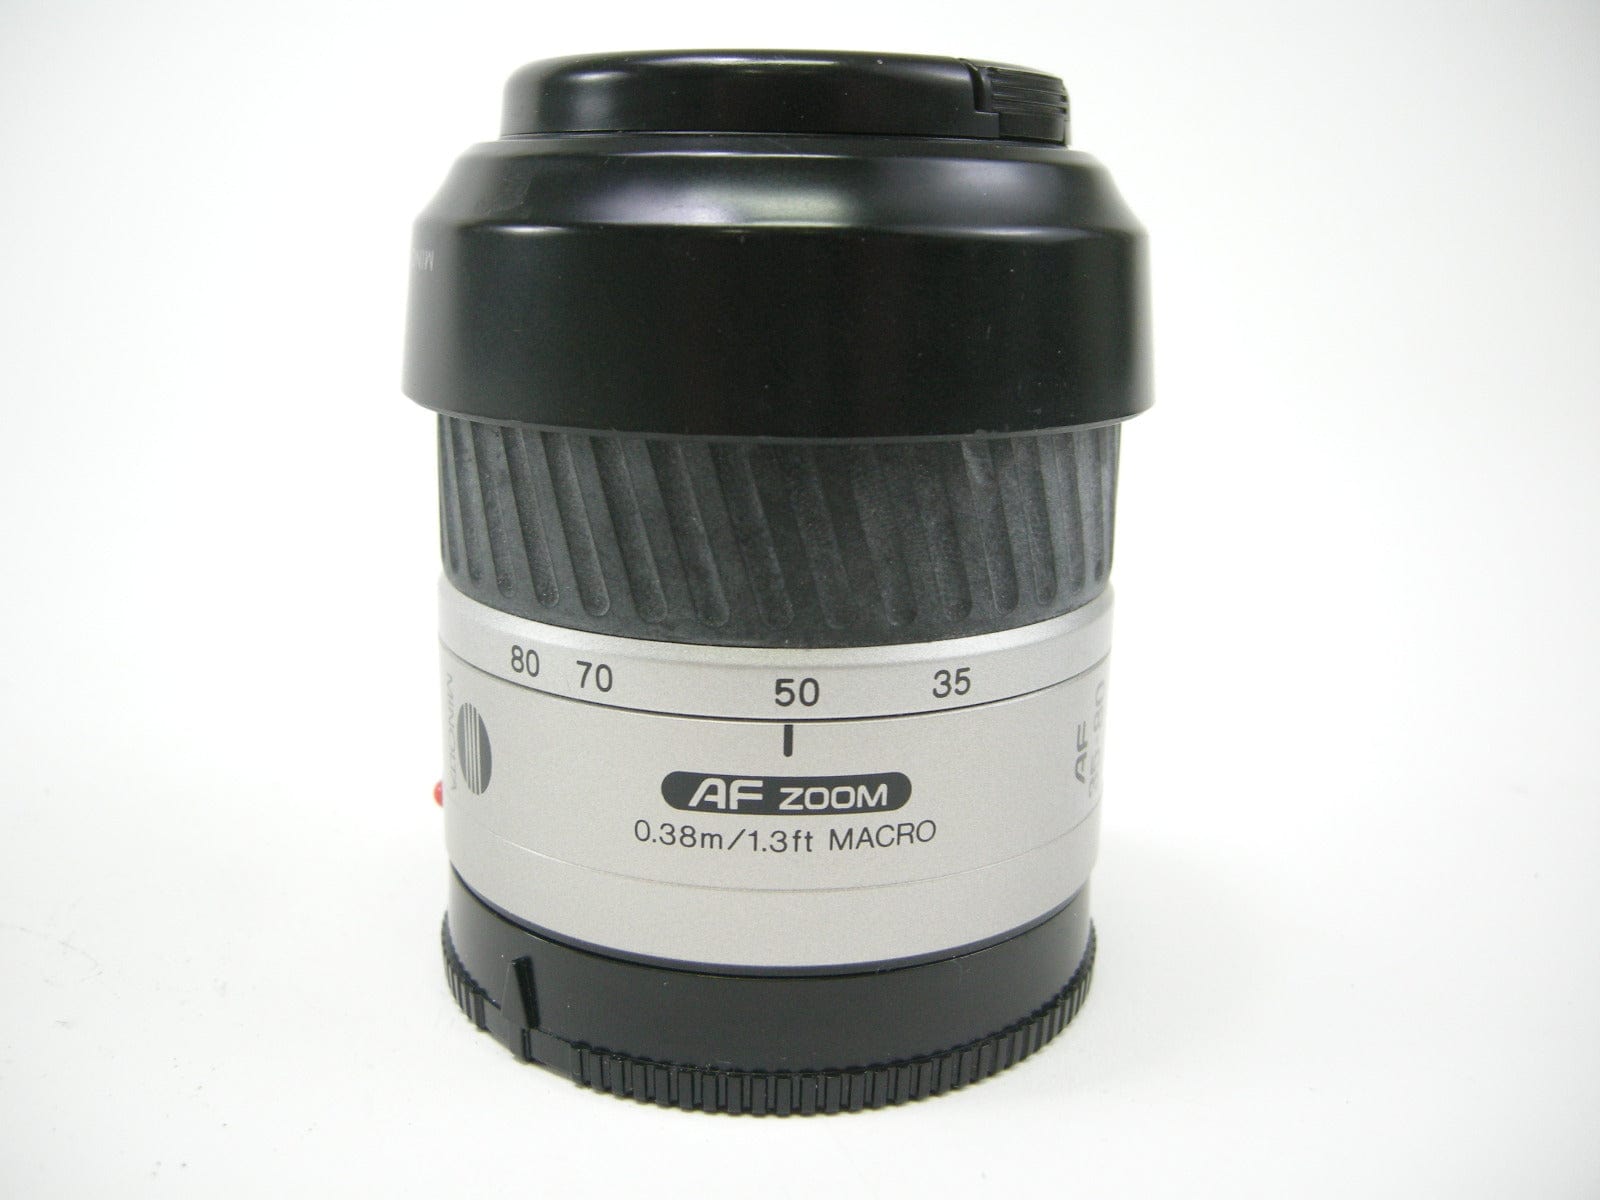 Minolta AF Zoom 35-80mm f4-5.6 A Mount Lens